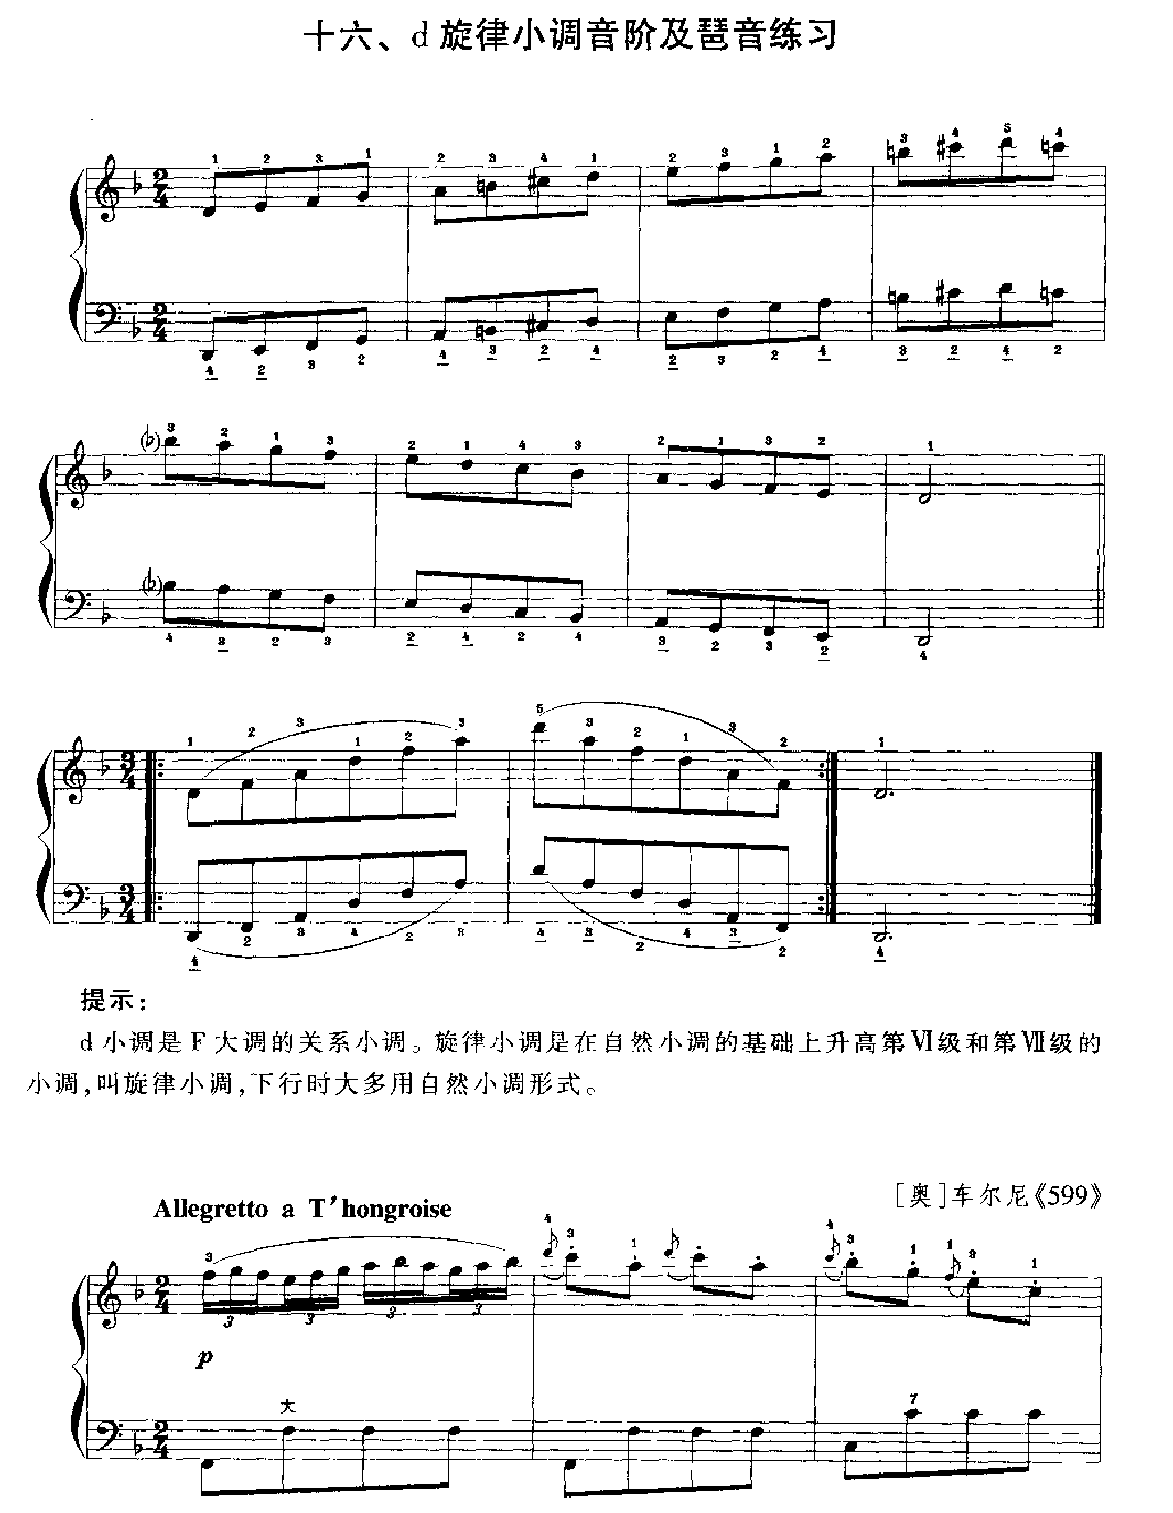 手风琴d旋律小调音阶及琶音练习1